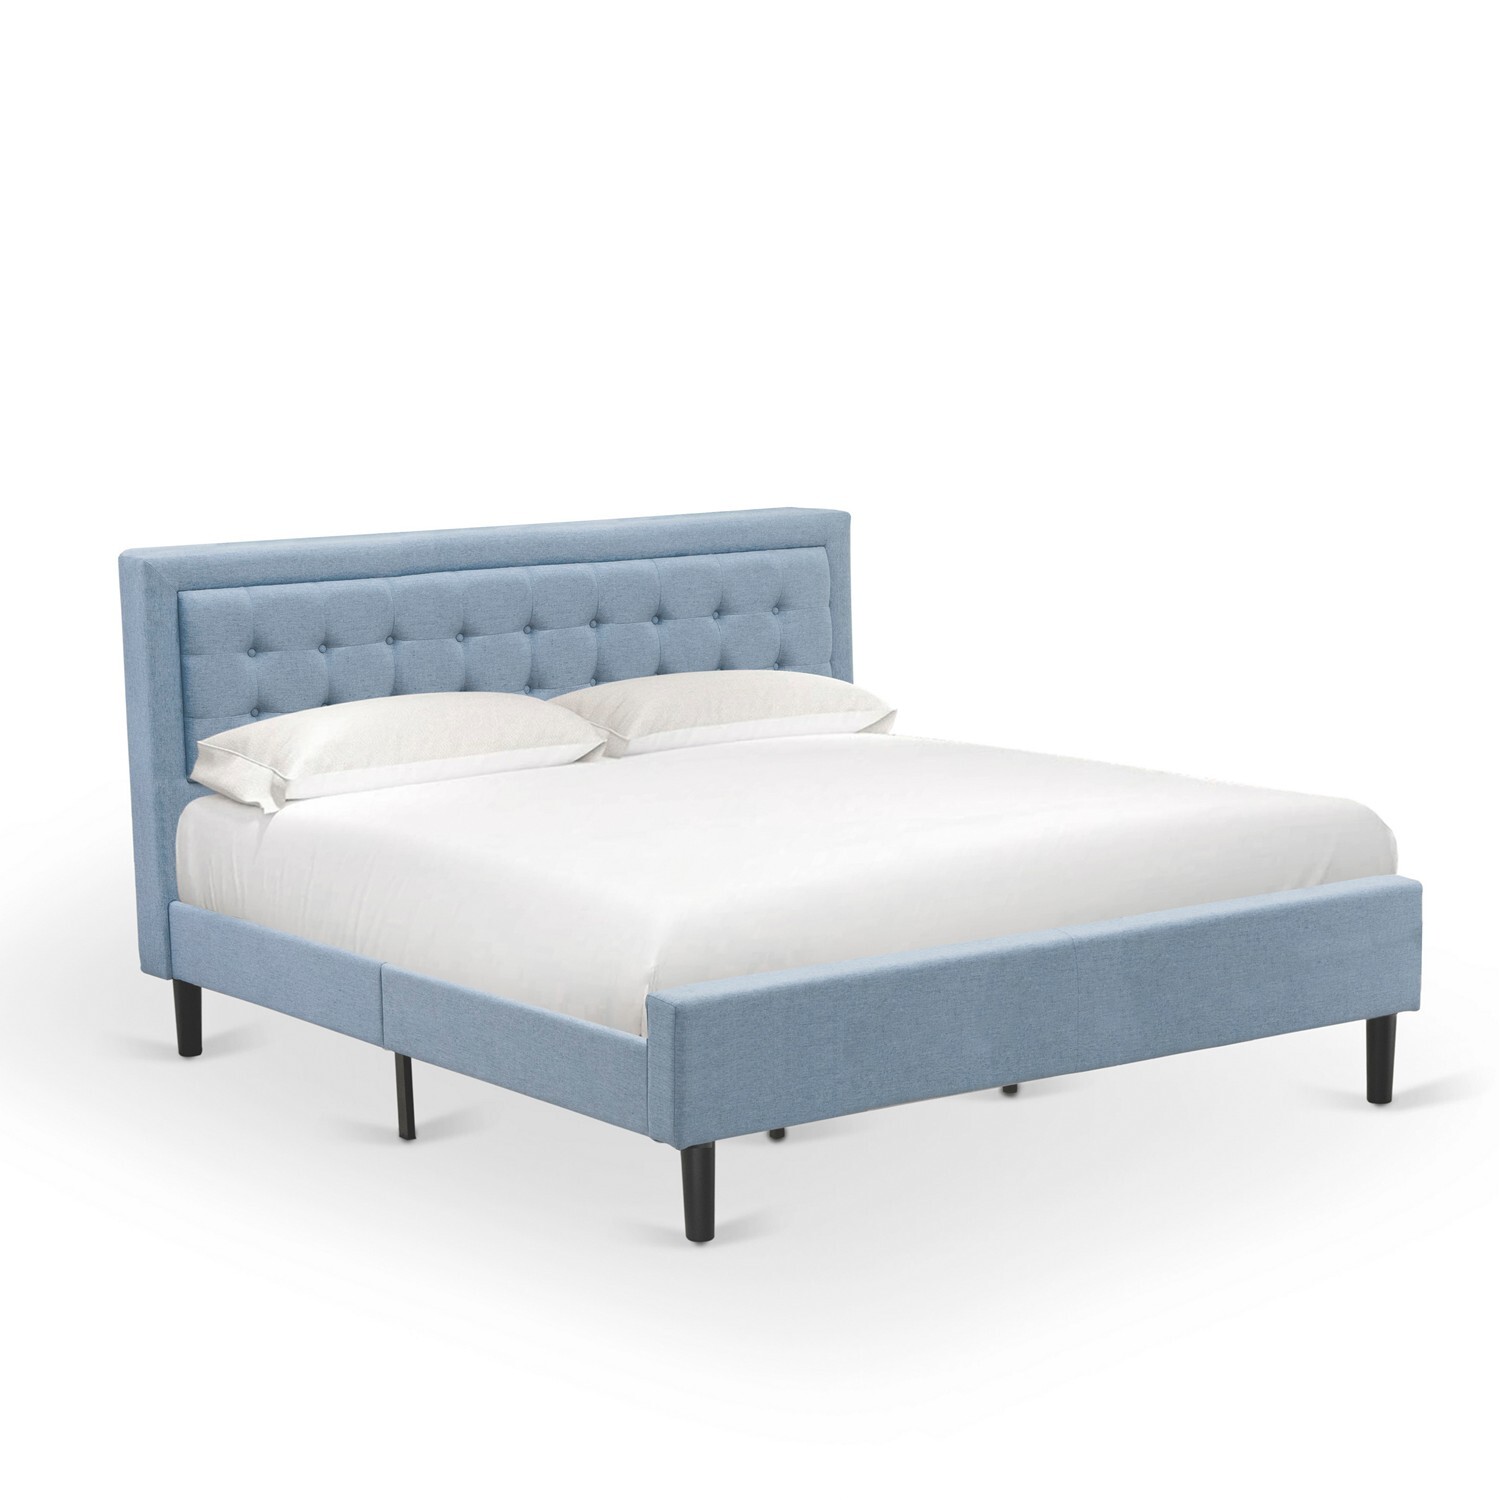 East West Furniture 2-piece Wood Fannin King Bedroom Set in Denim Blue - image 2 of 5